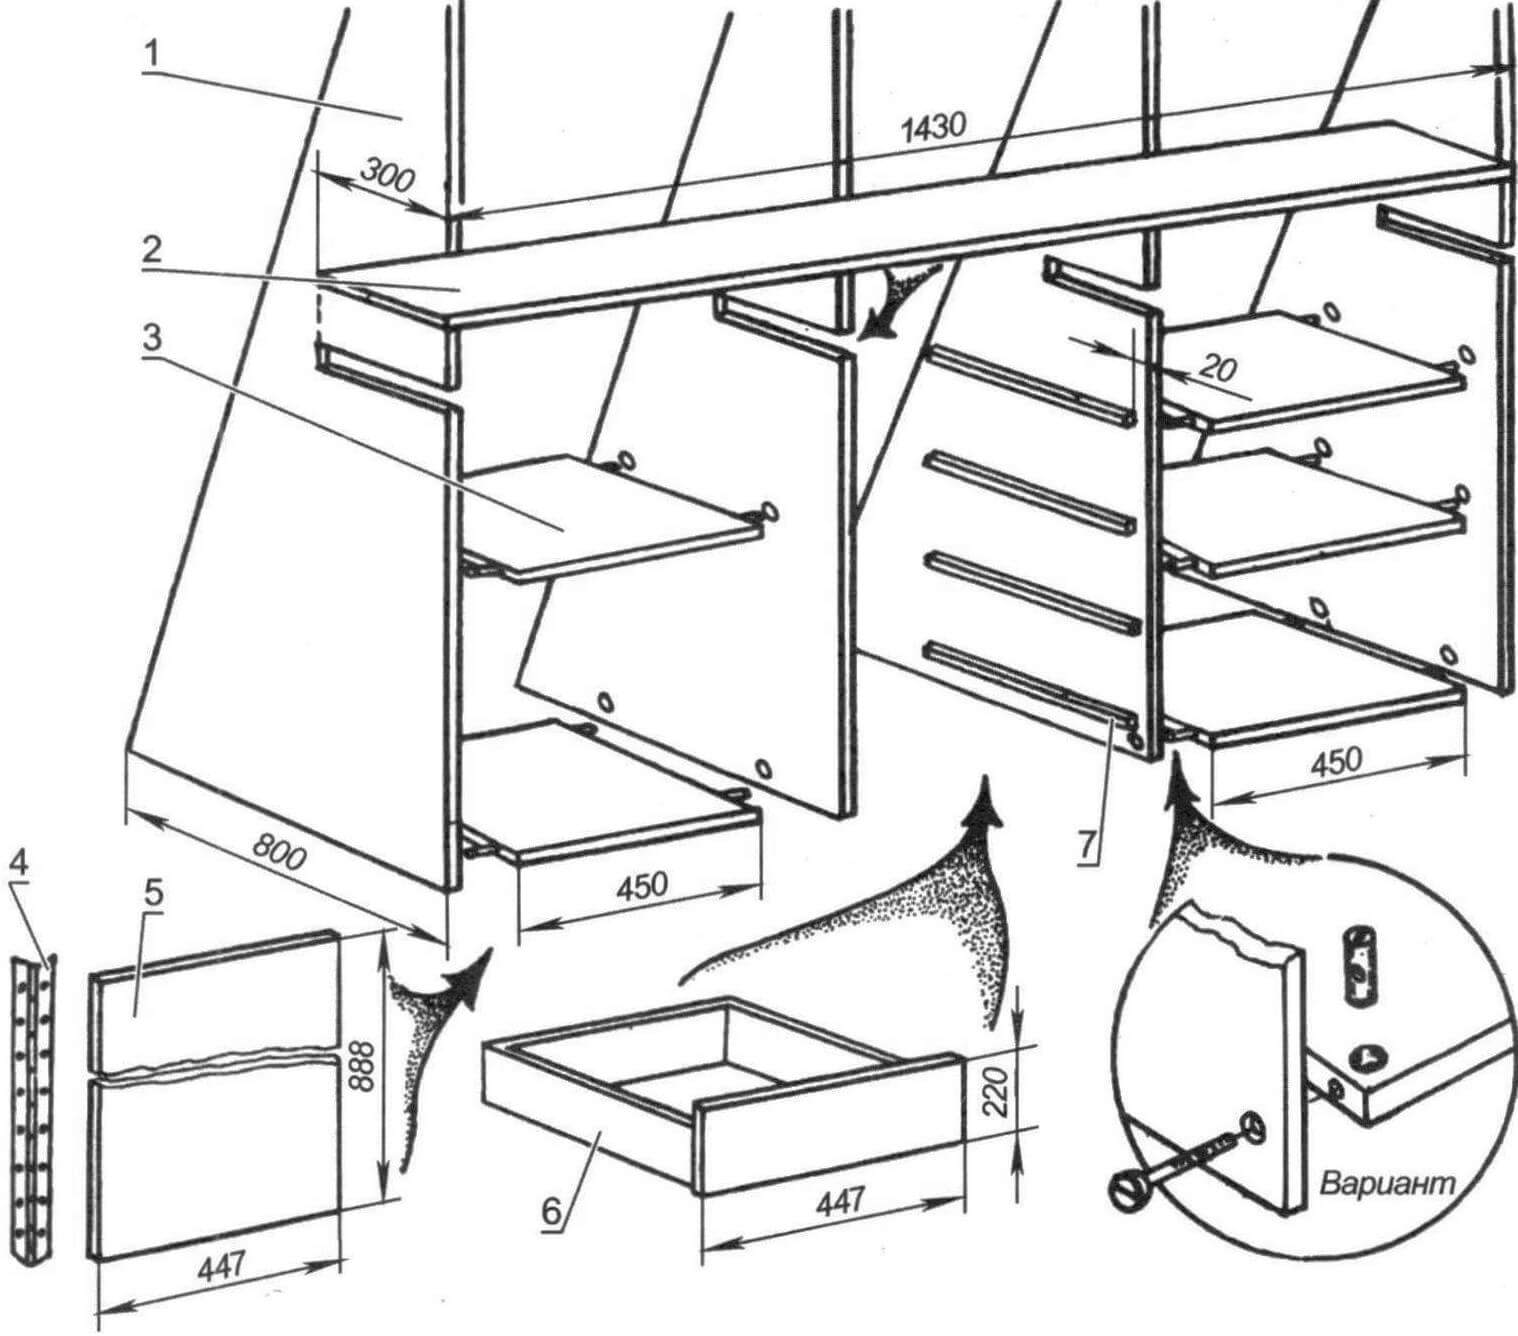 Вариант решения нижней части шкафа с невыдвижными тумбочками (размеры ориентировочные)